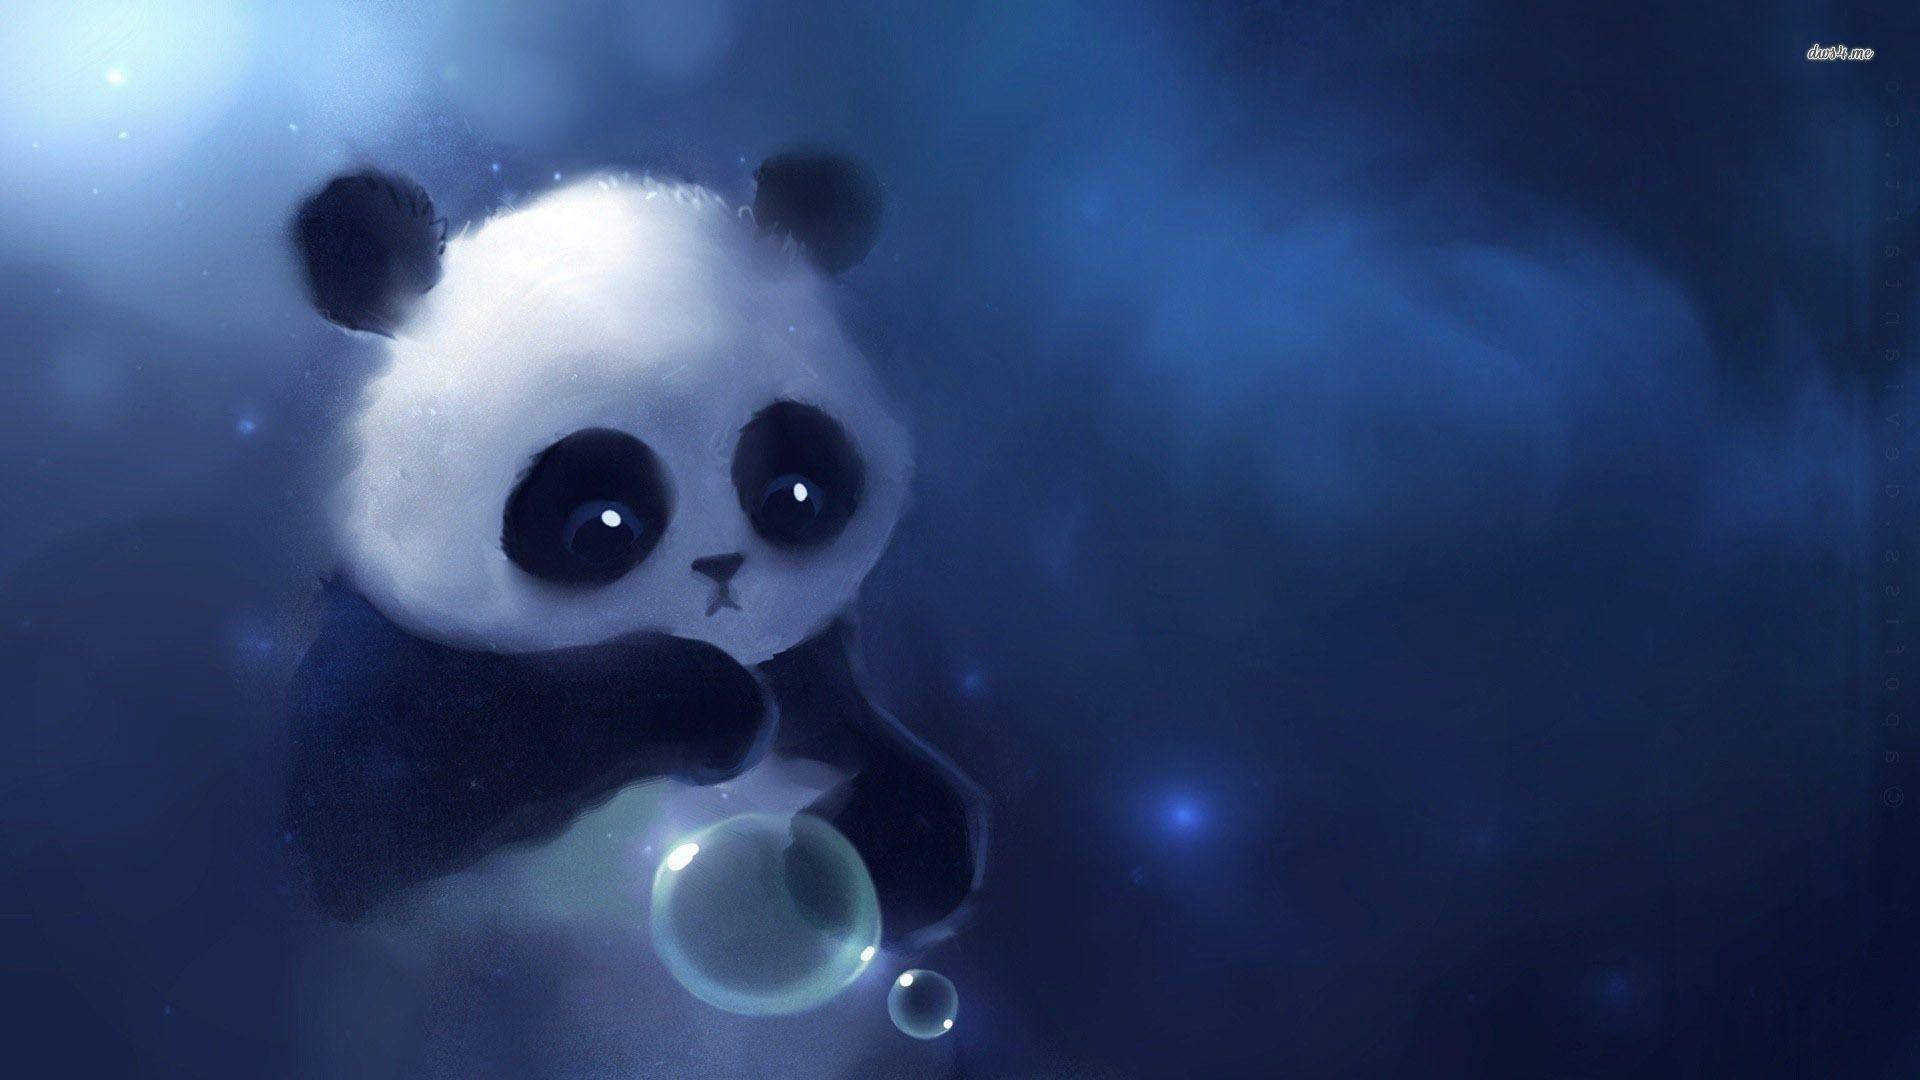 3D Cute Panda Wallpapers - Top Free 3D Cute Panda Backgrounds -  WallpaperAccess